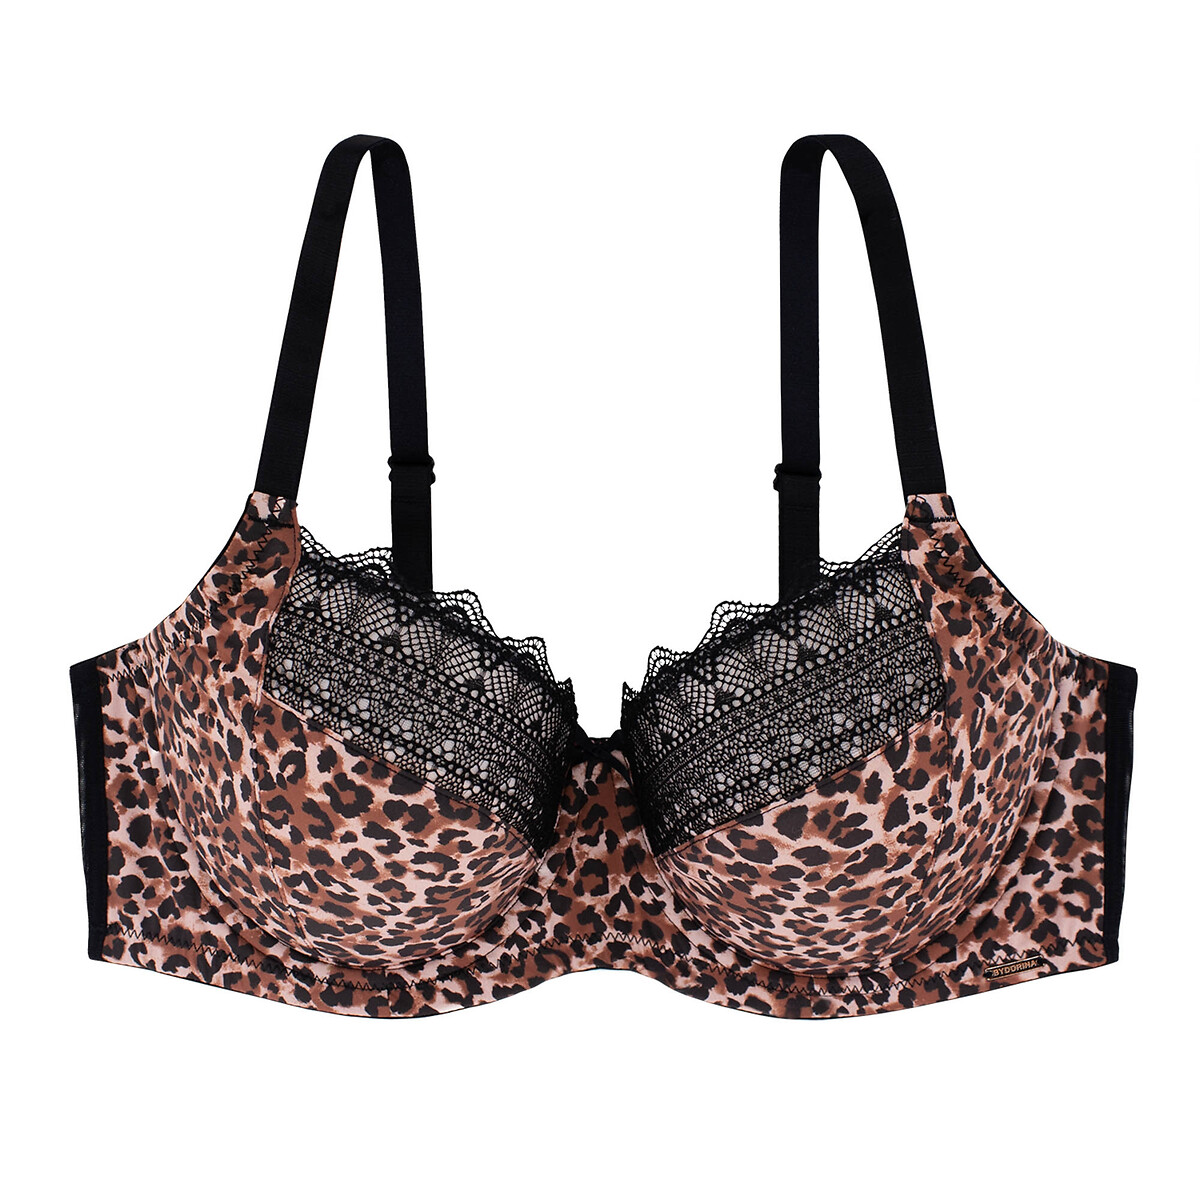 Zena recycled push-up bra in leopard print, coral, Dorina